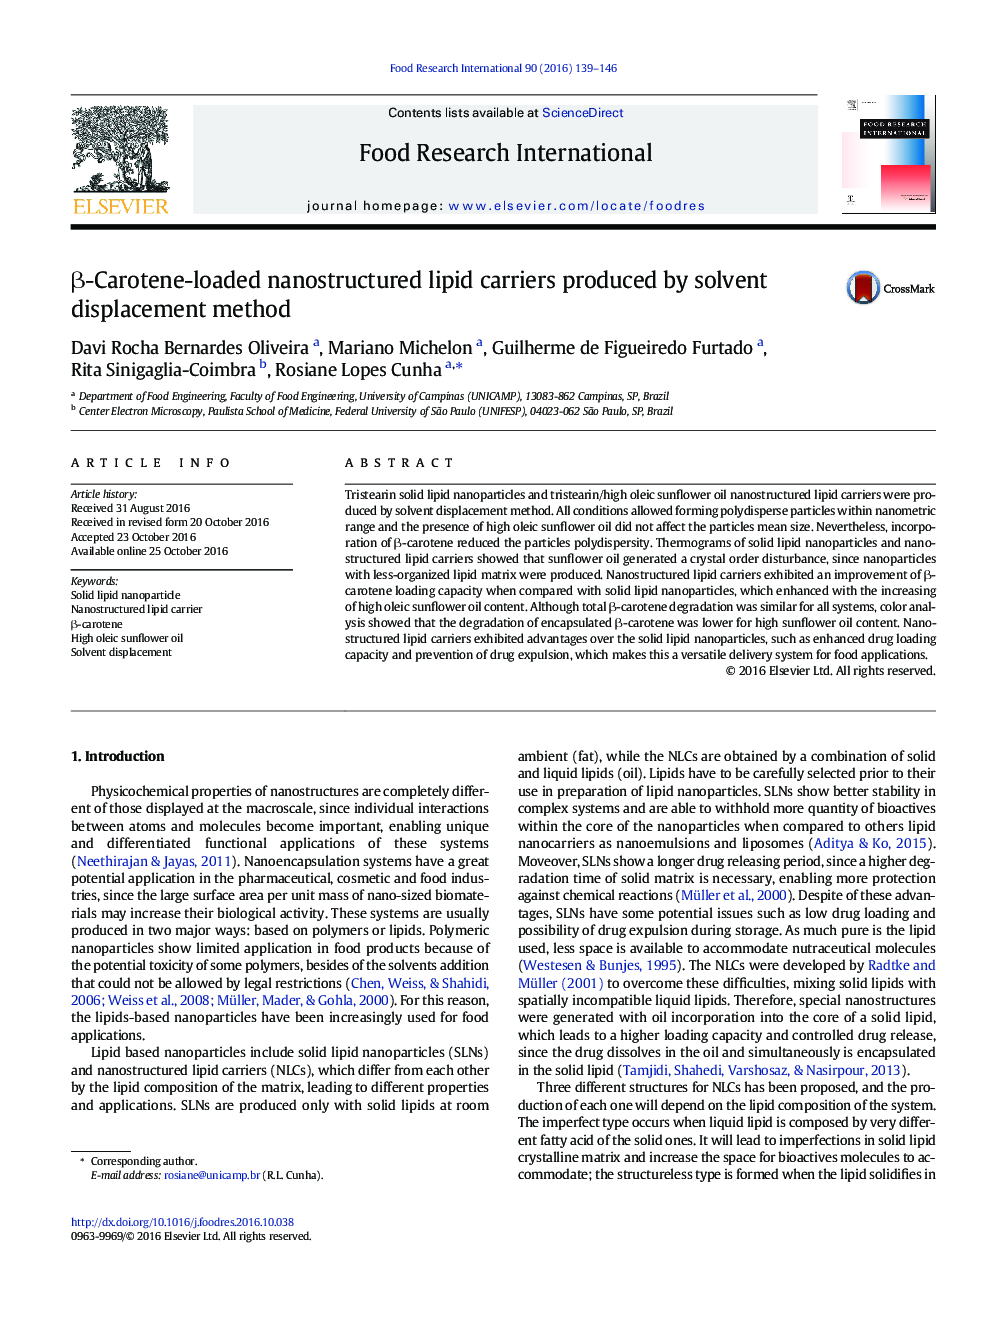 β-Carotene-loaded nanostructured lipid carriers produced by solvent displacement method